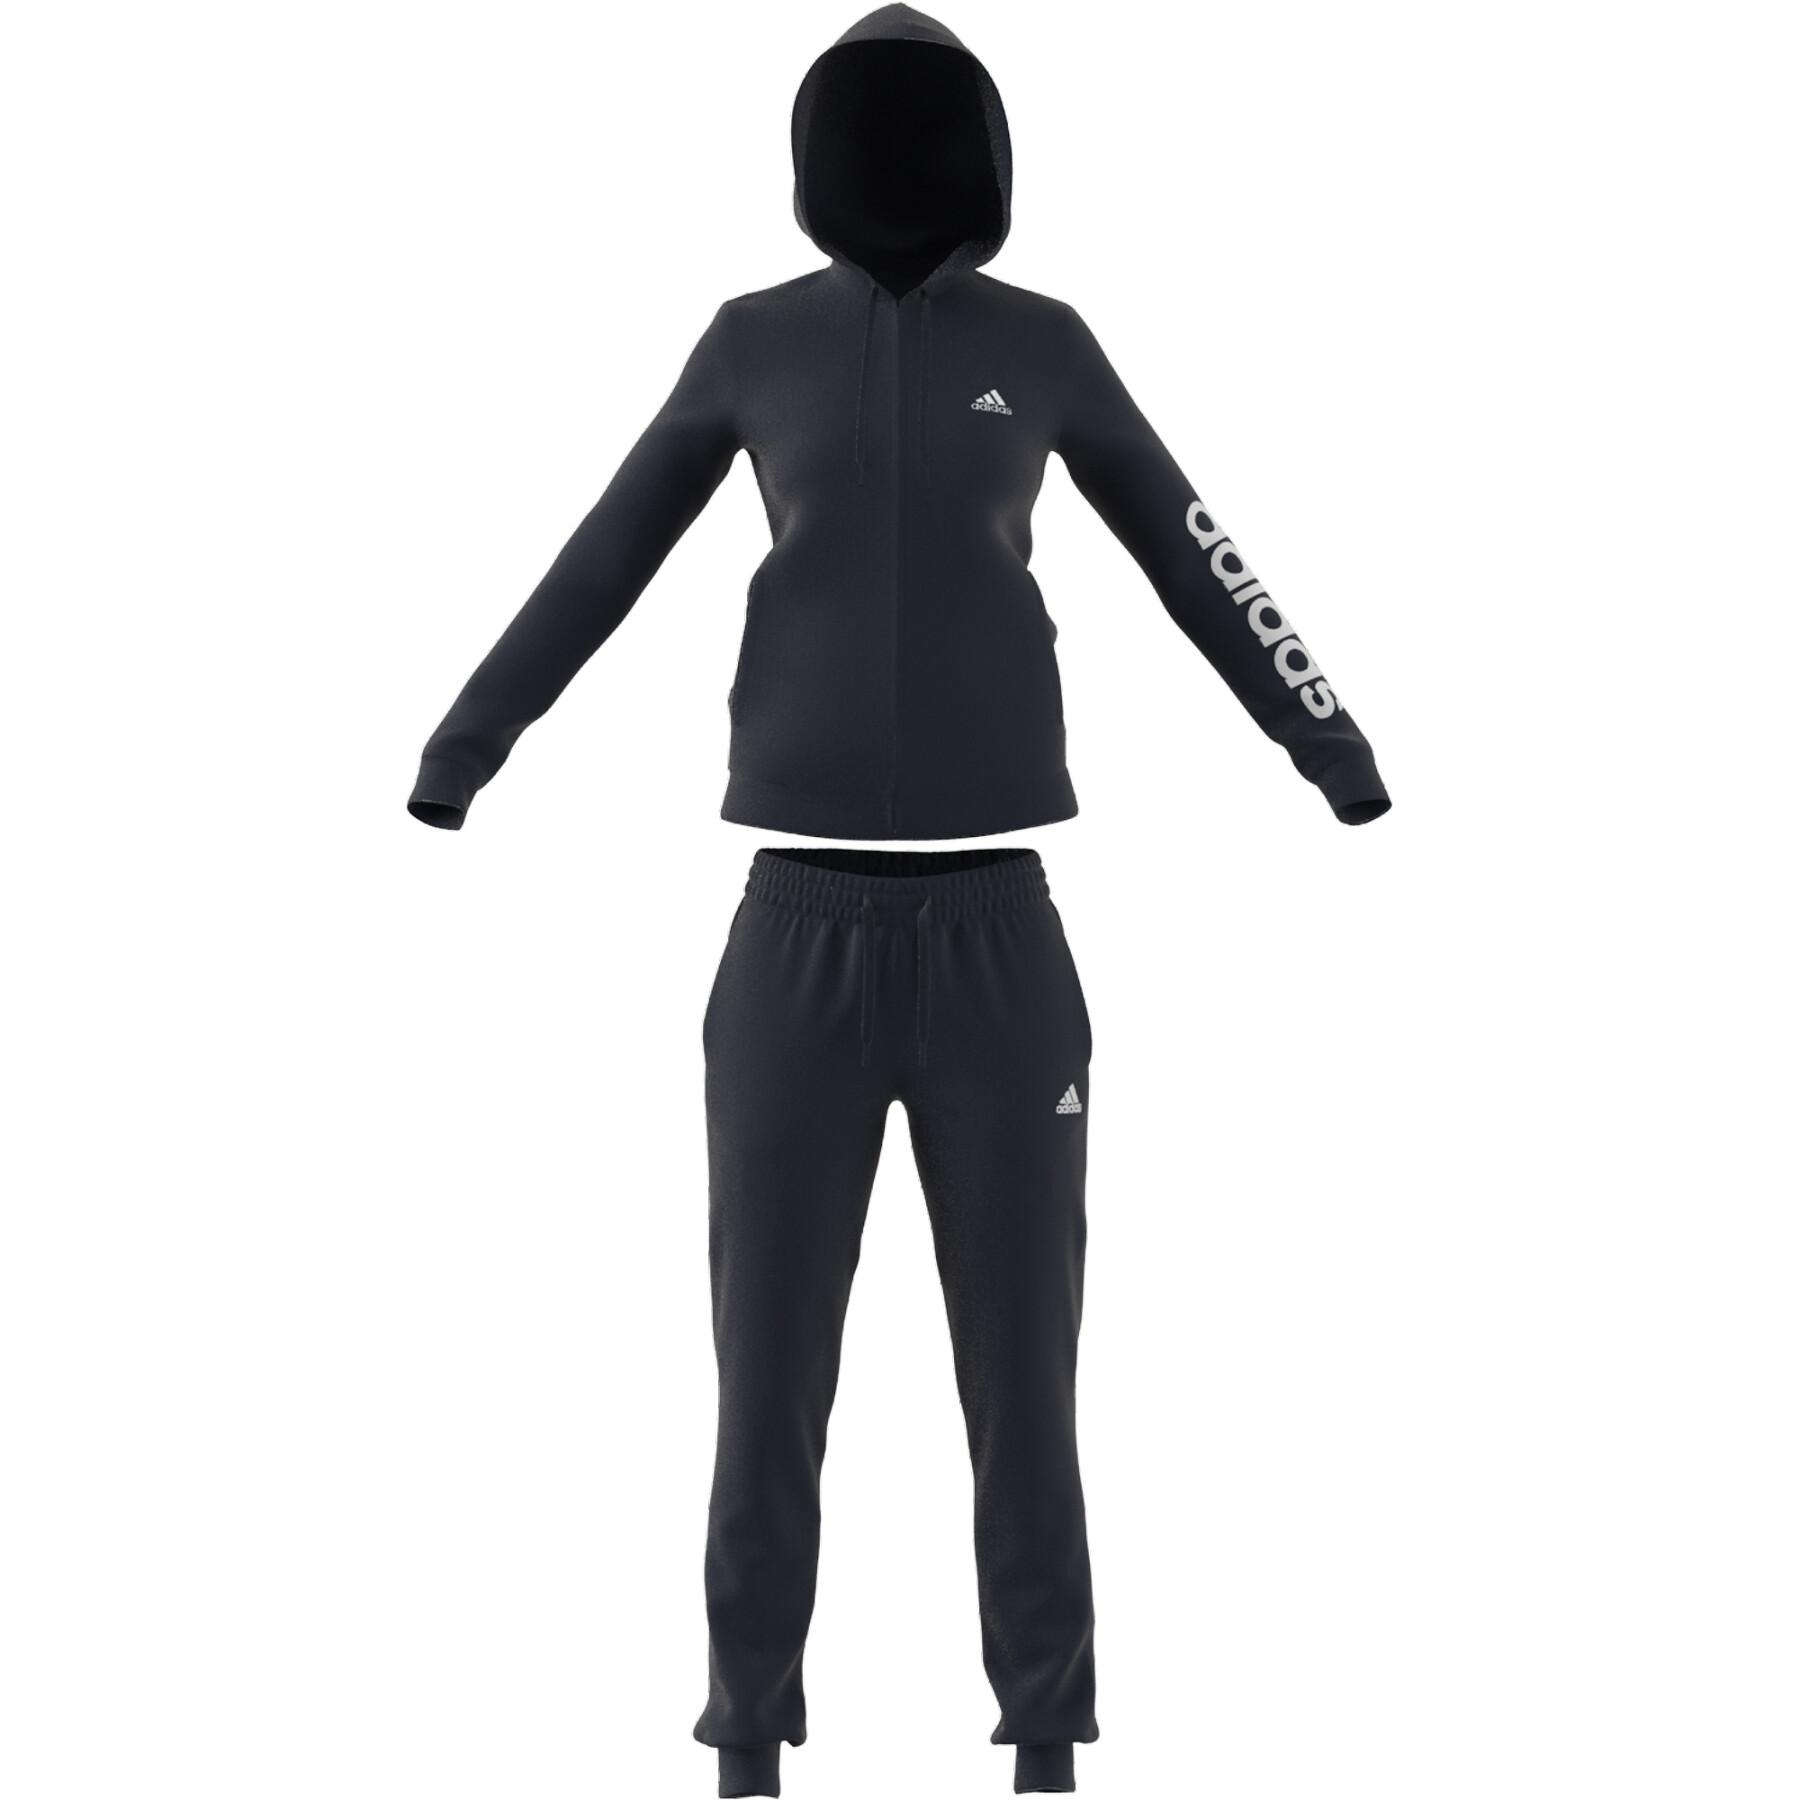 Jacken - Logo adidas French Terry Damen-Trainingsanzug und - Trainingsanzüge - Textilien Essentials Bekleidung